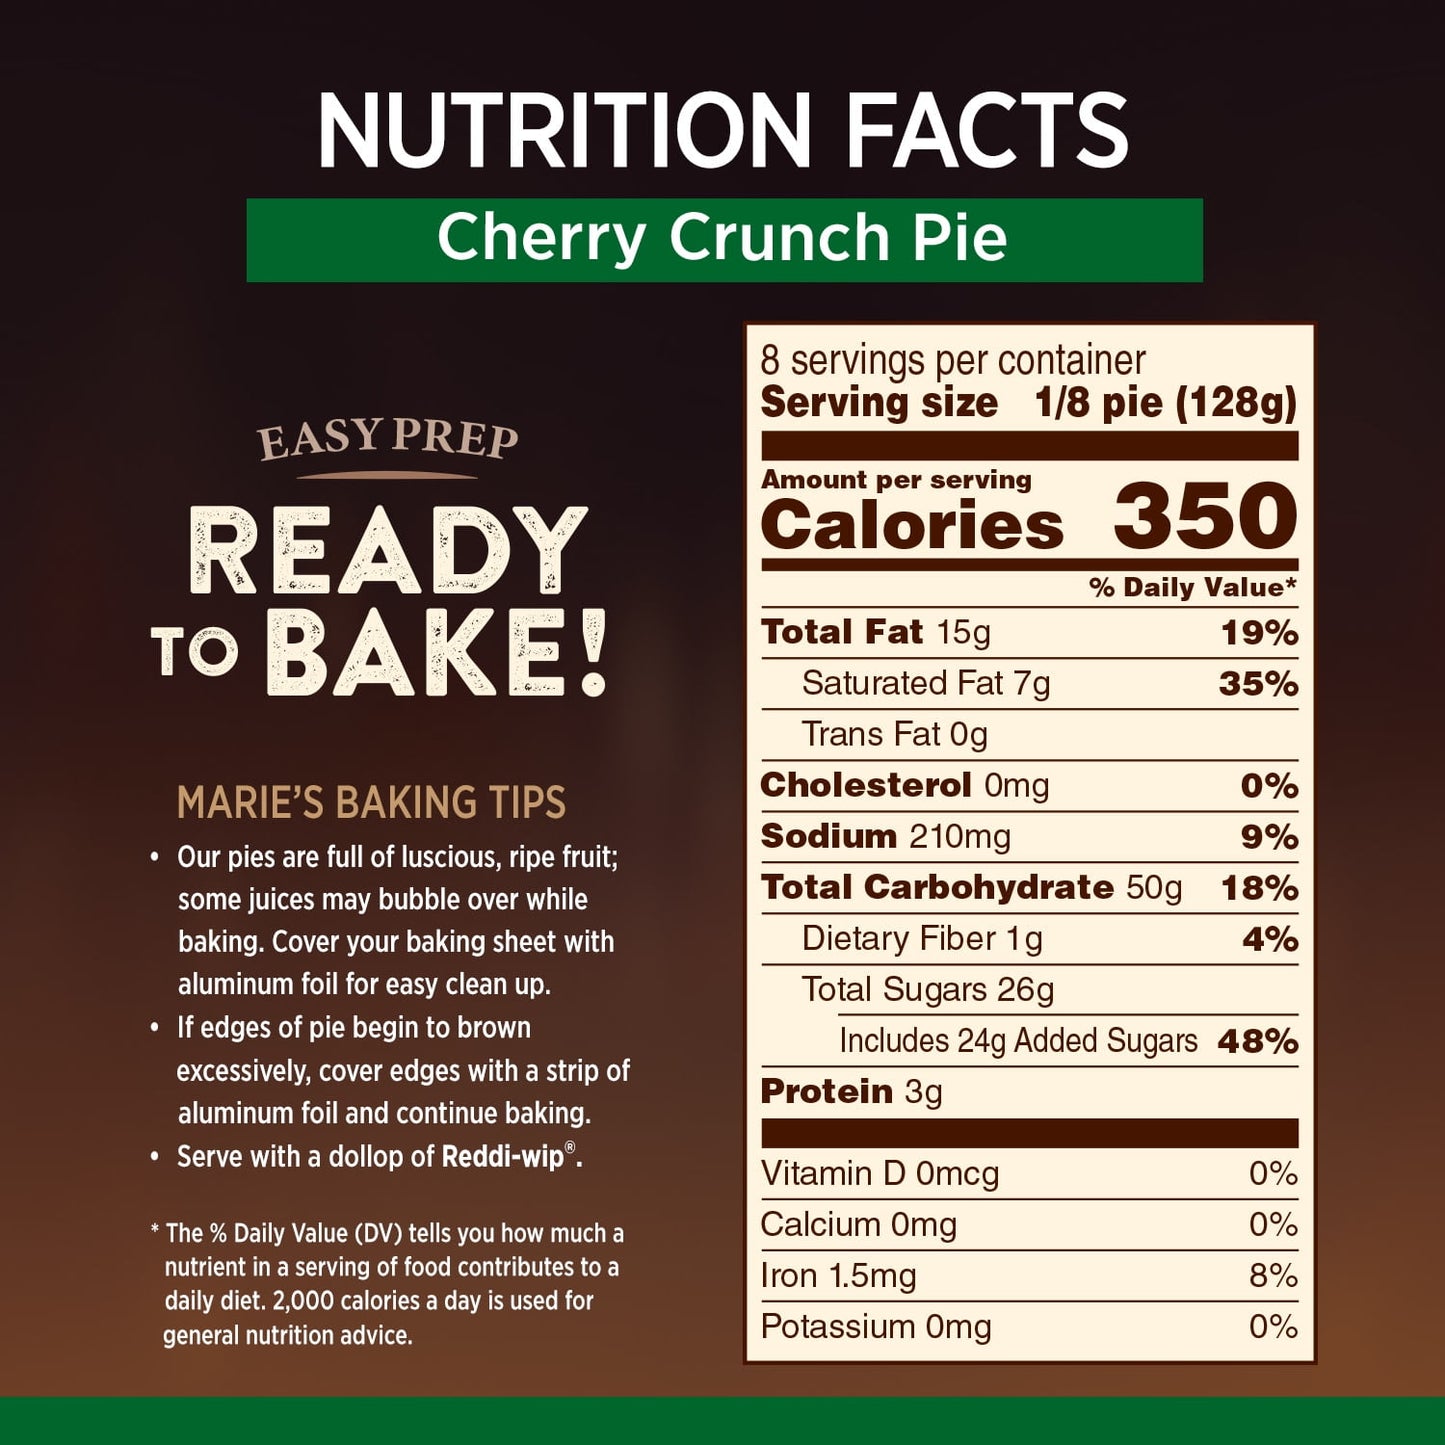 Marie Callender's Cherry Crunch Pie, 36 oz (Frozen)